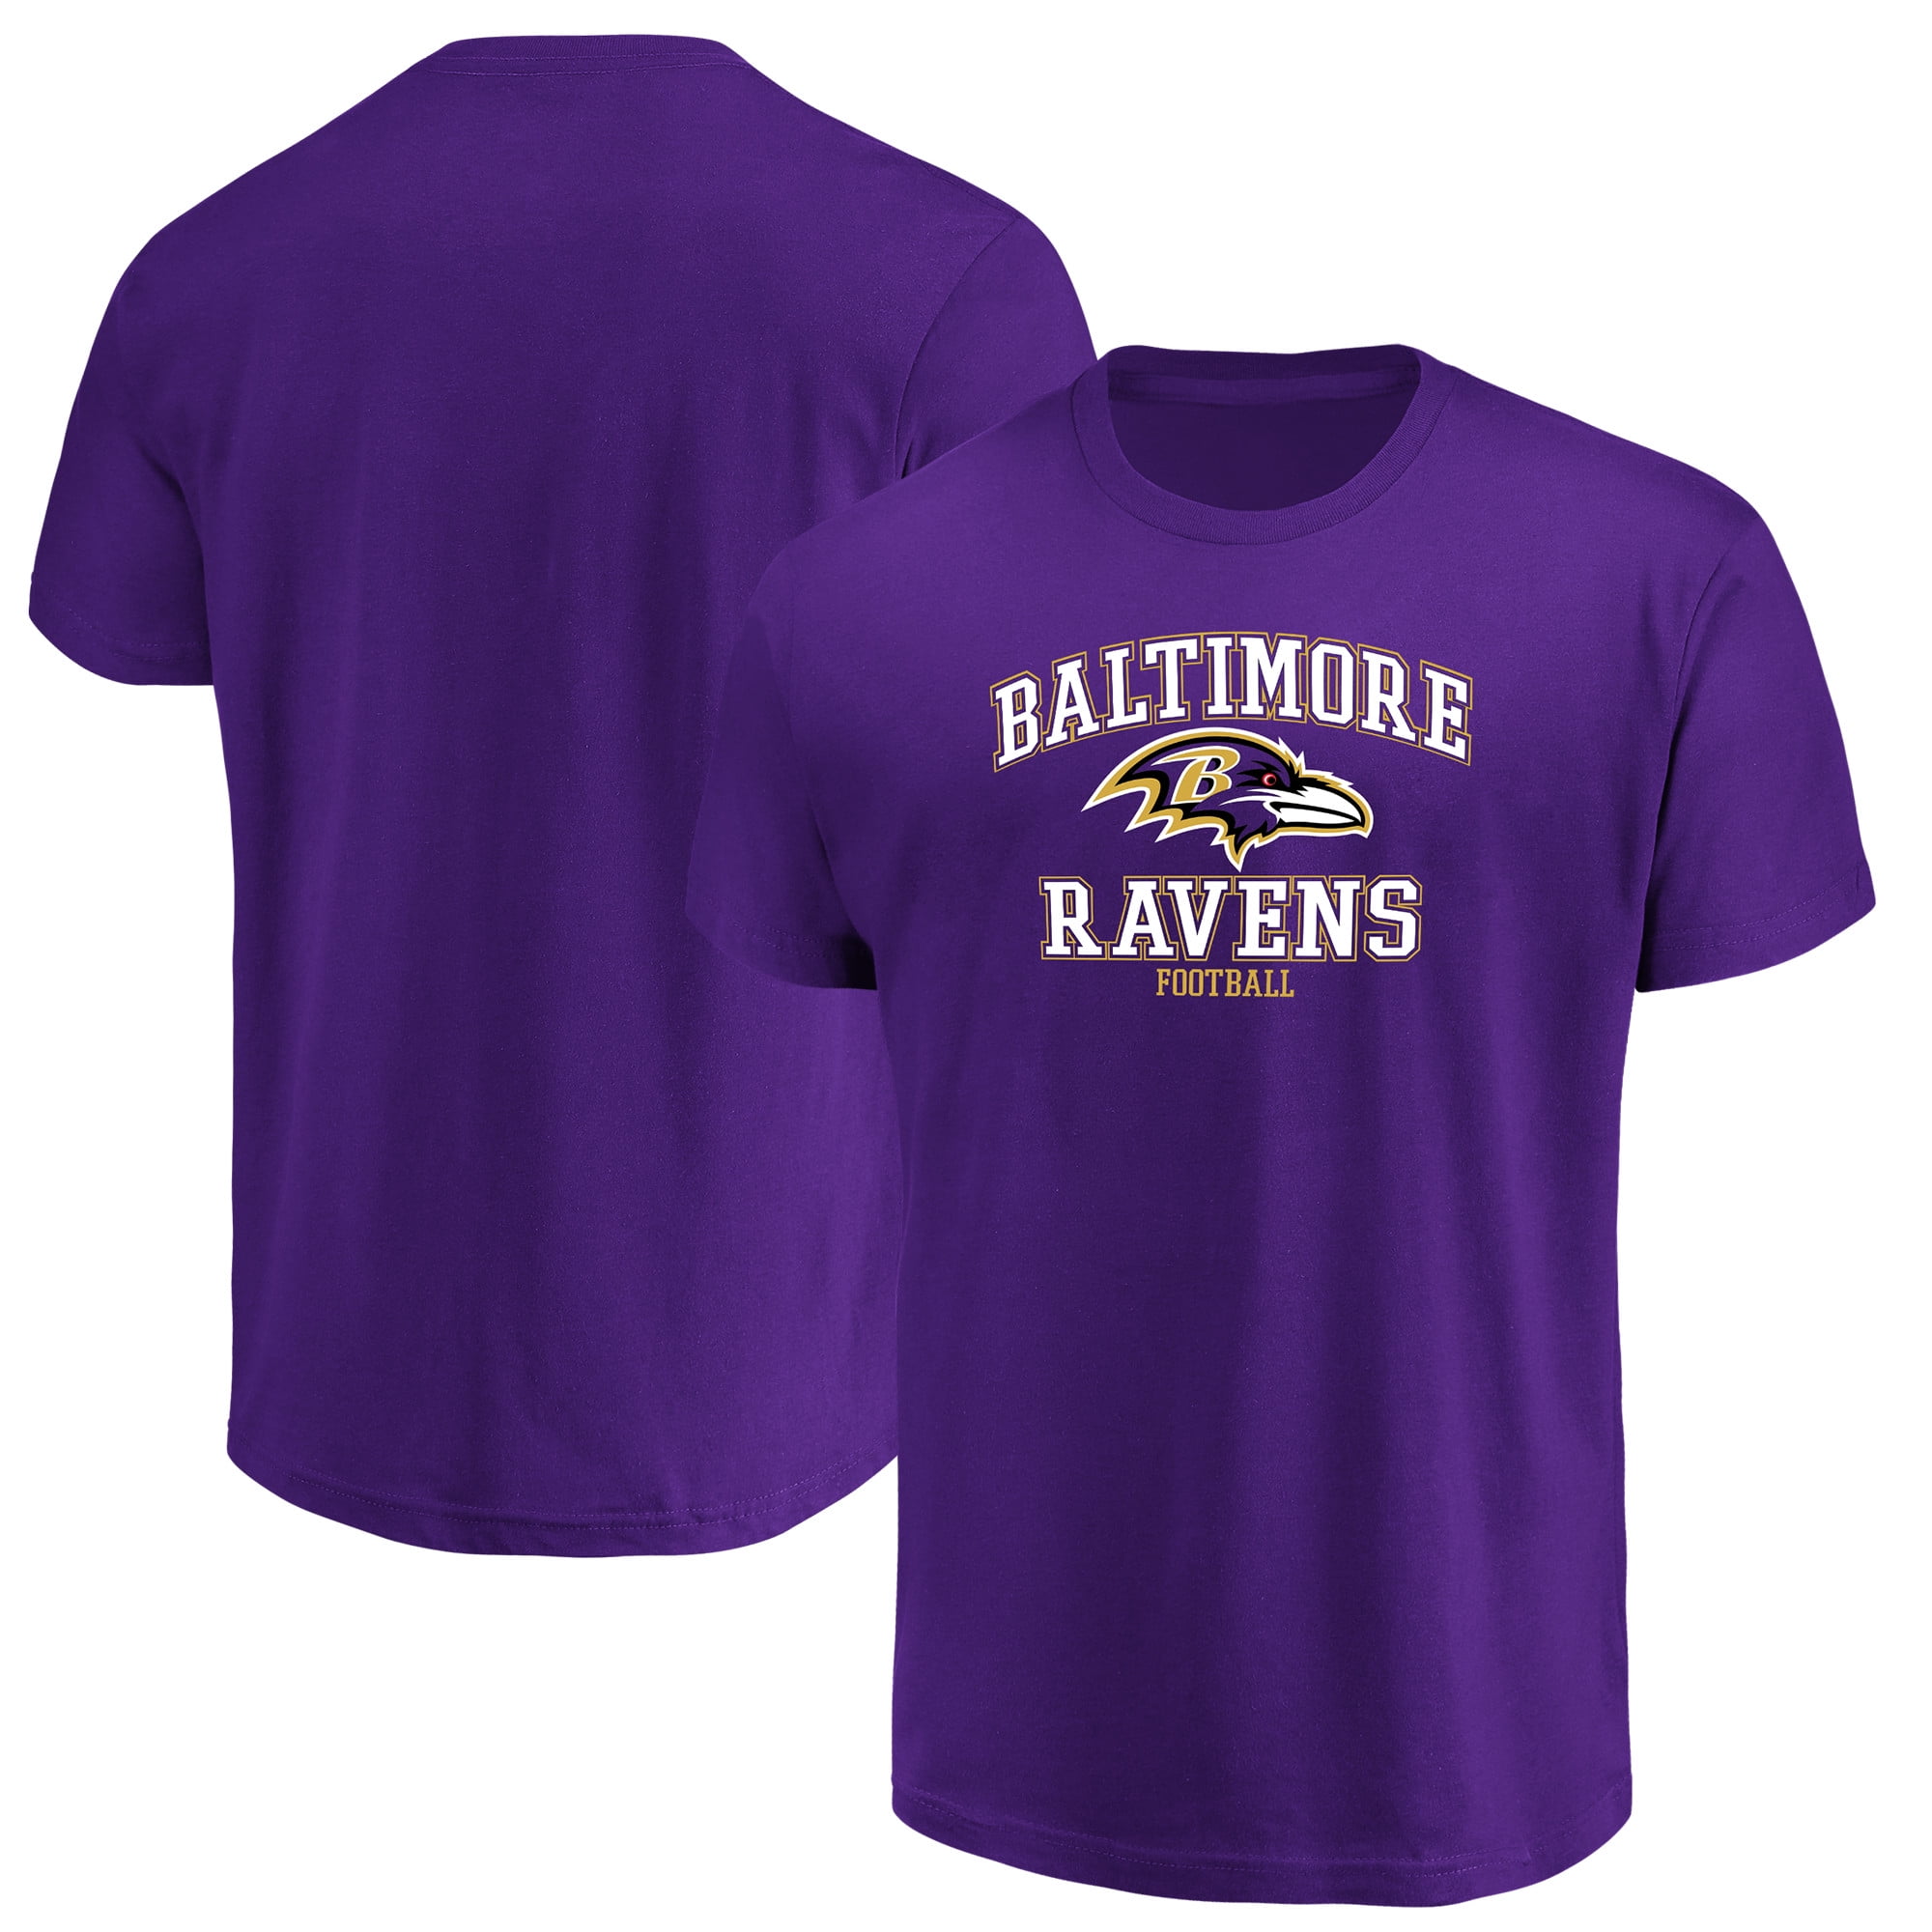 Baltimore Ravens Team Shop - Walmart.com